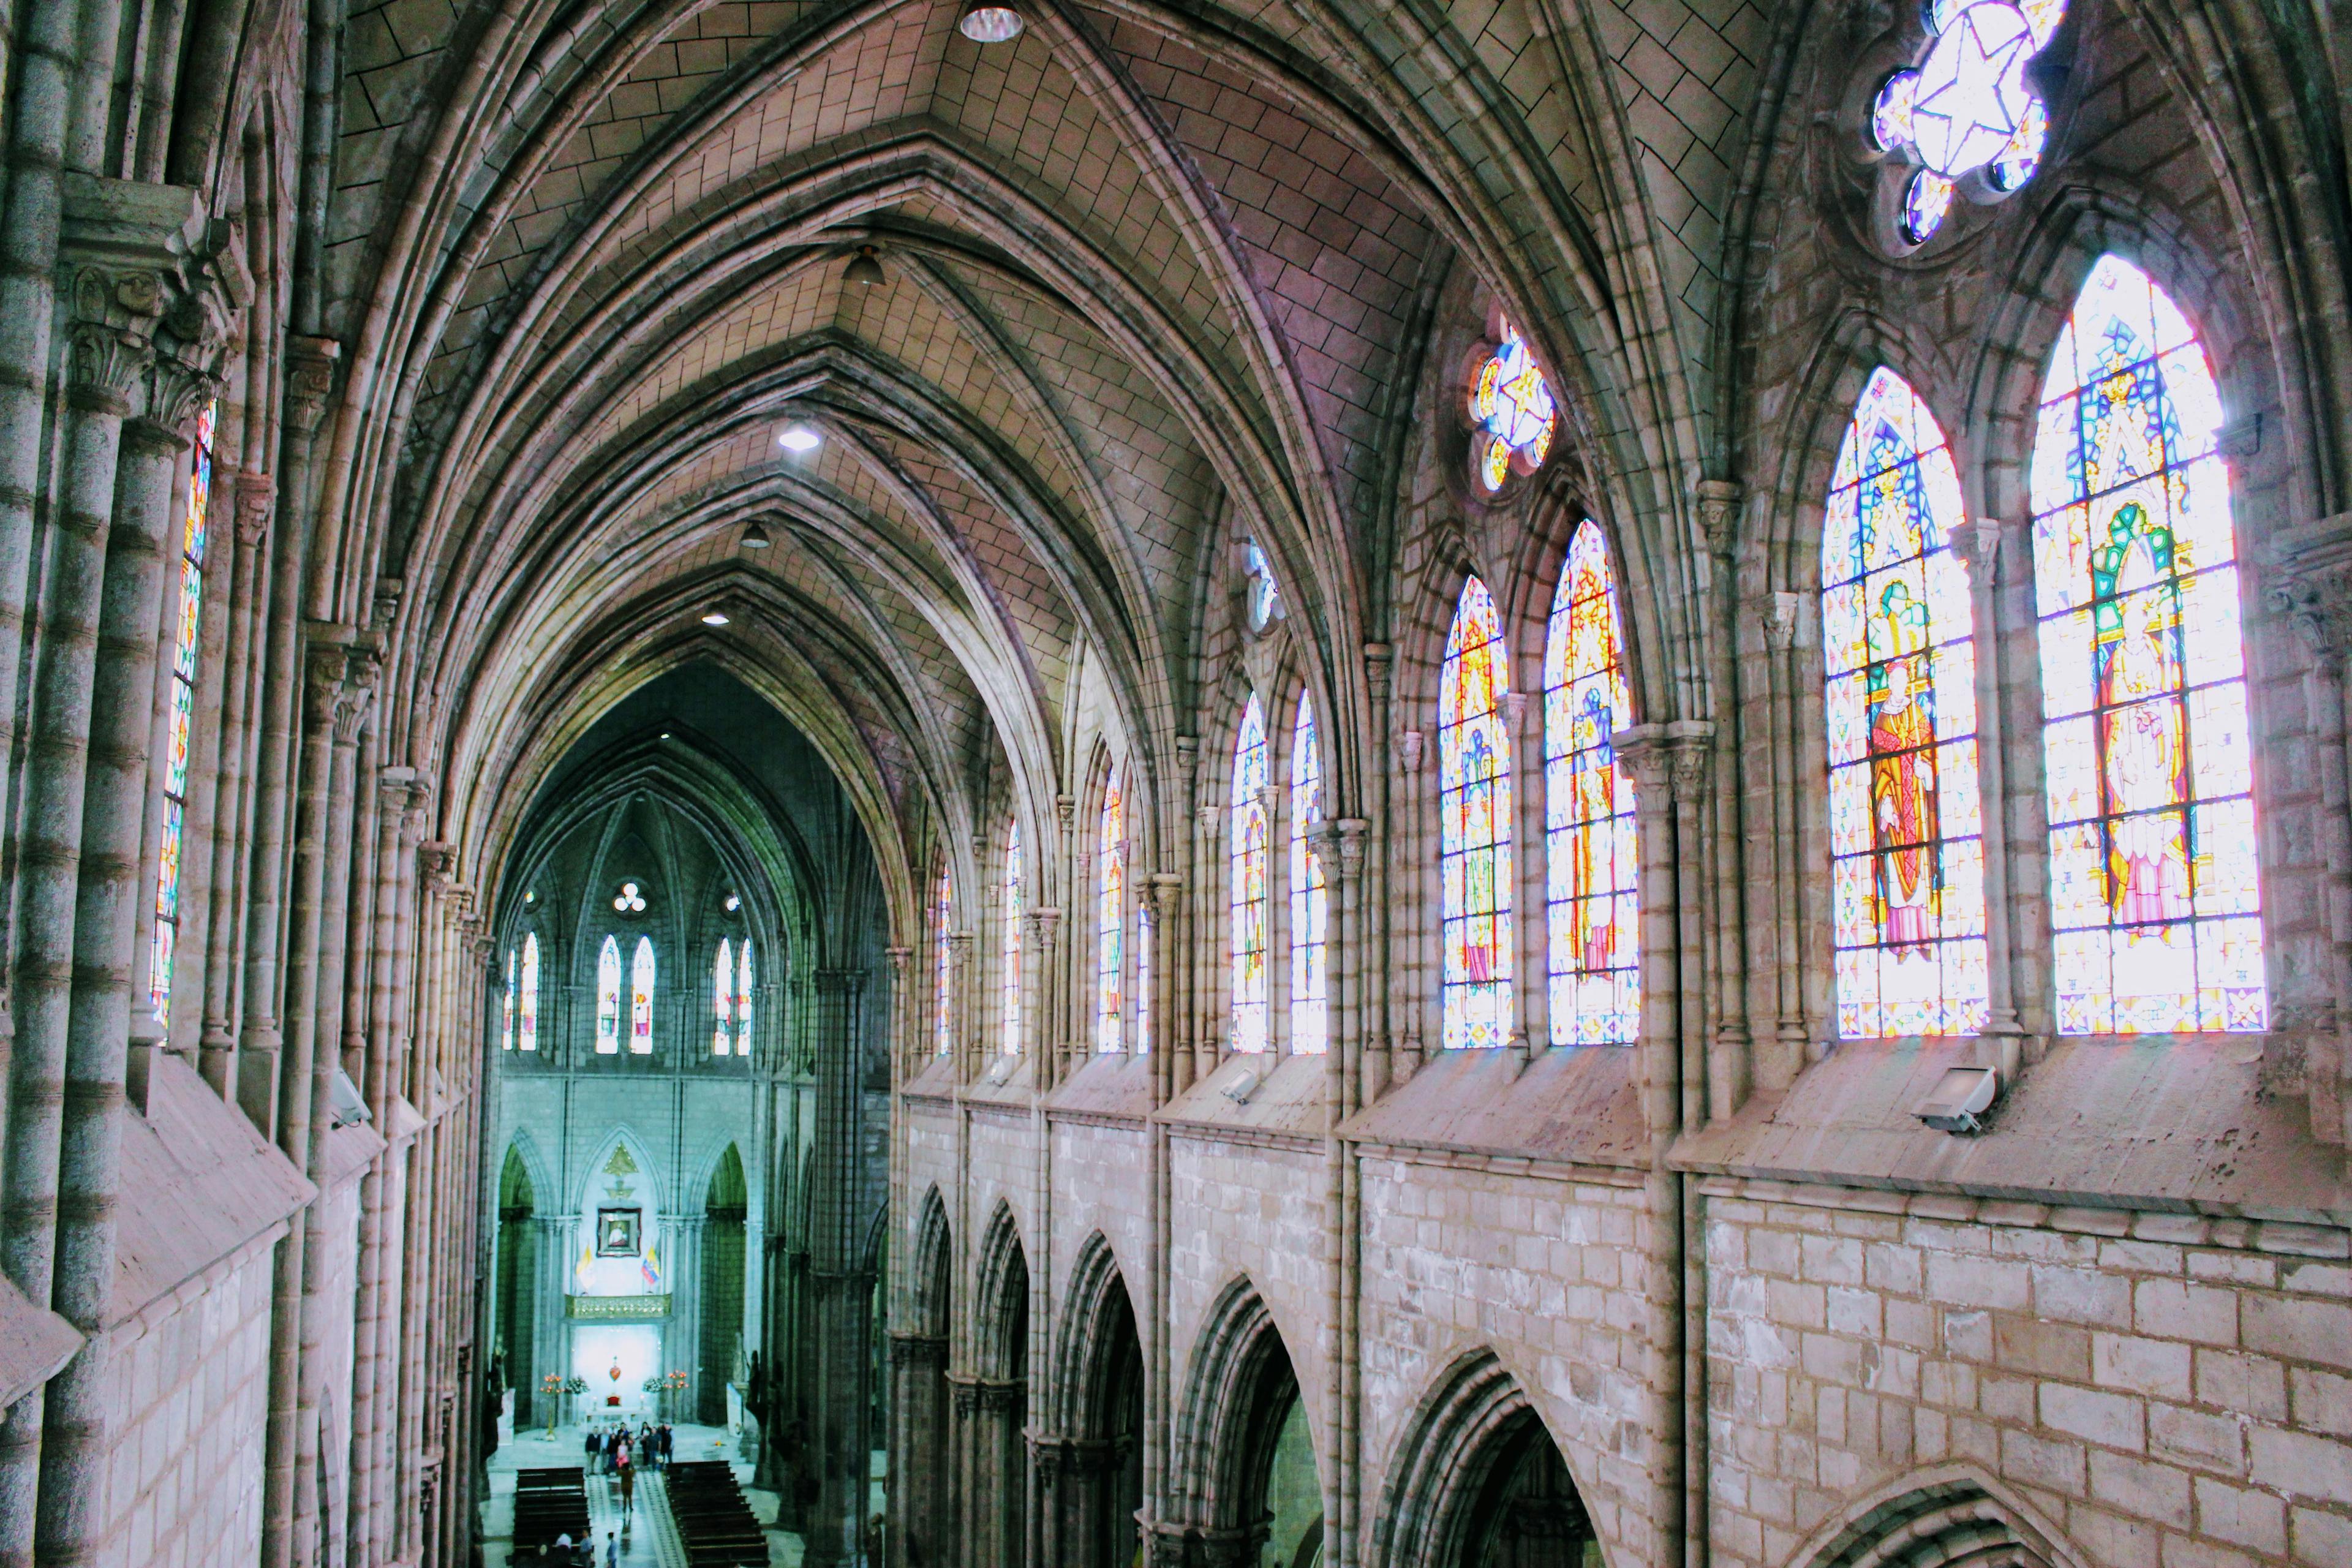 Interior of Basílica del Voto Nacional